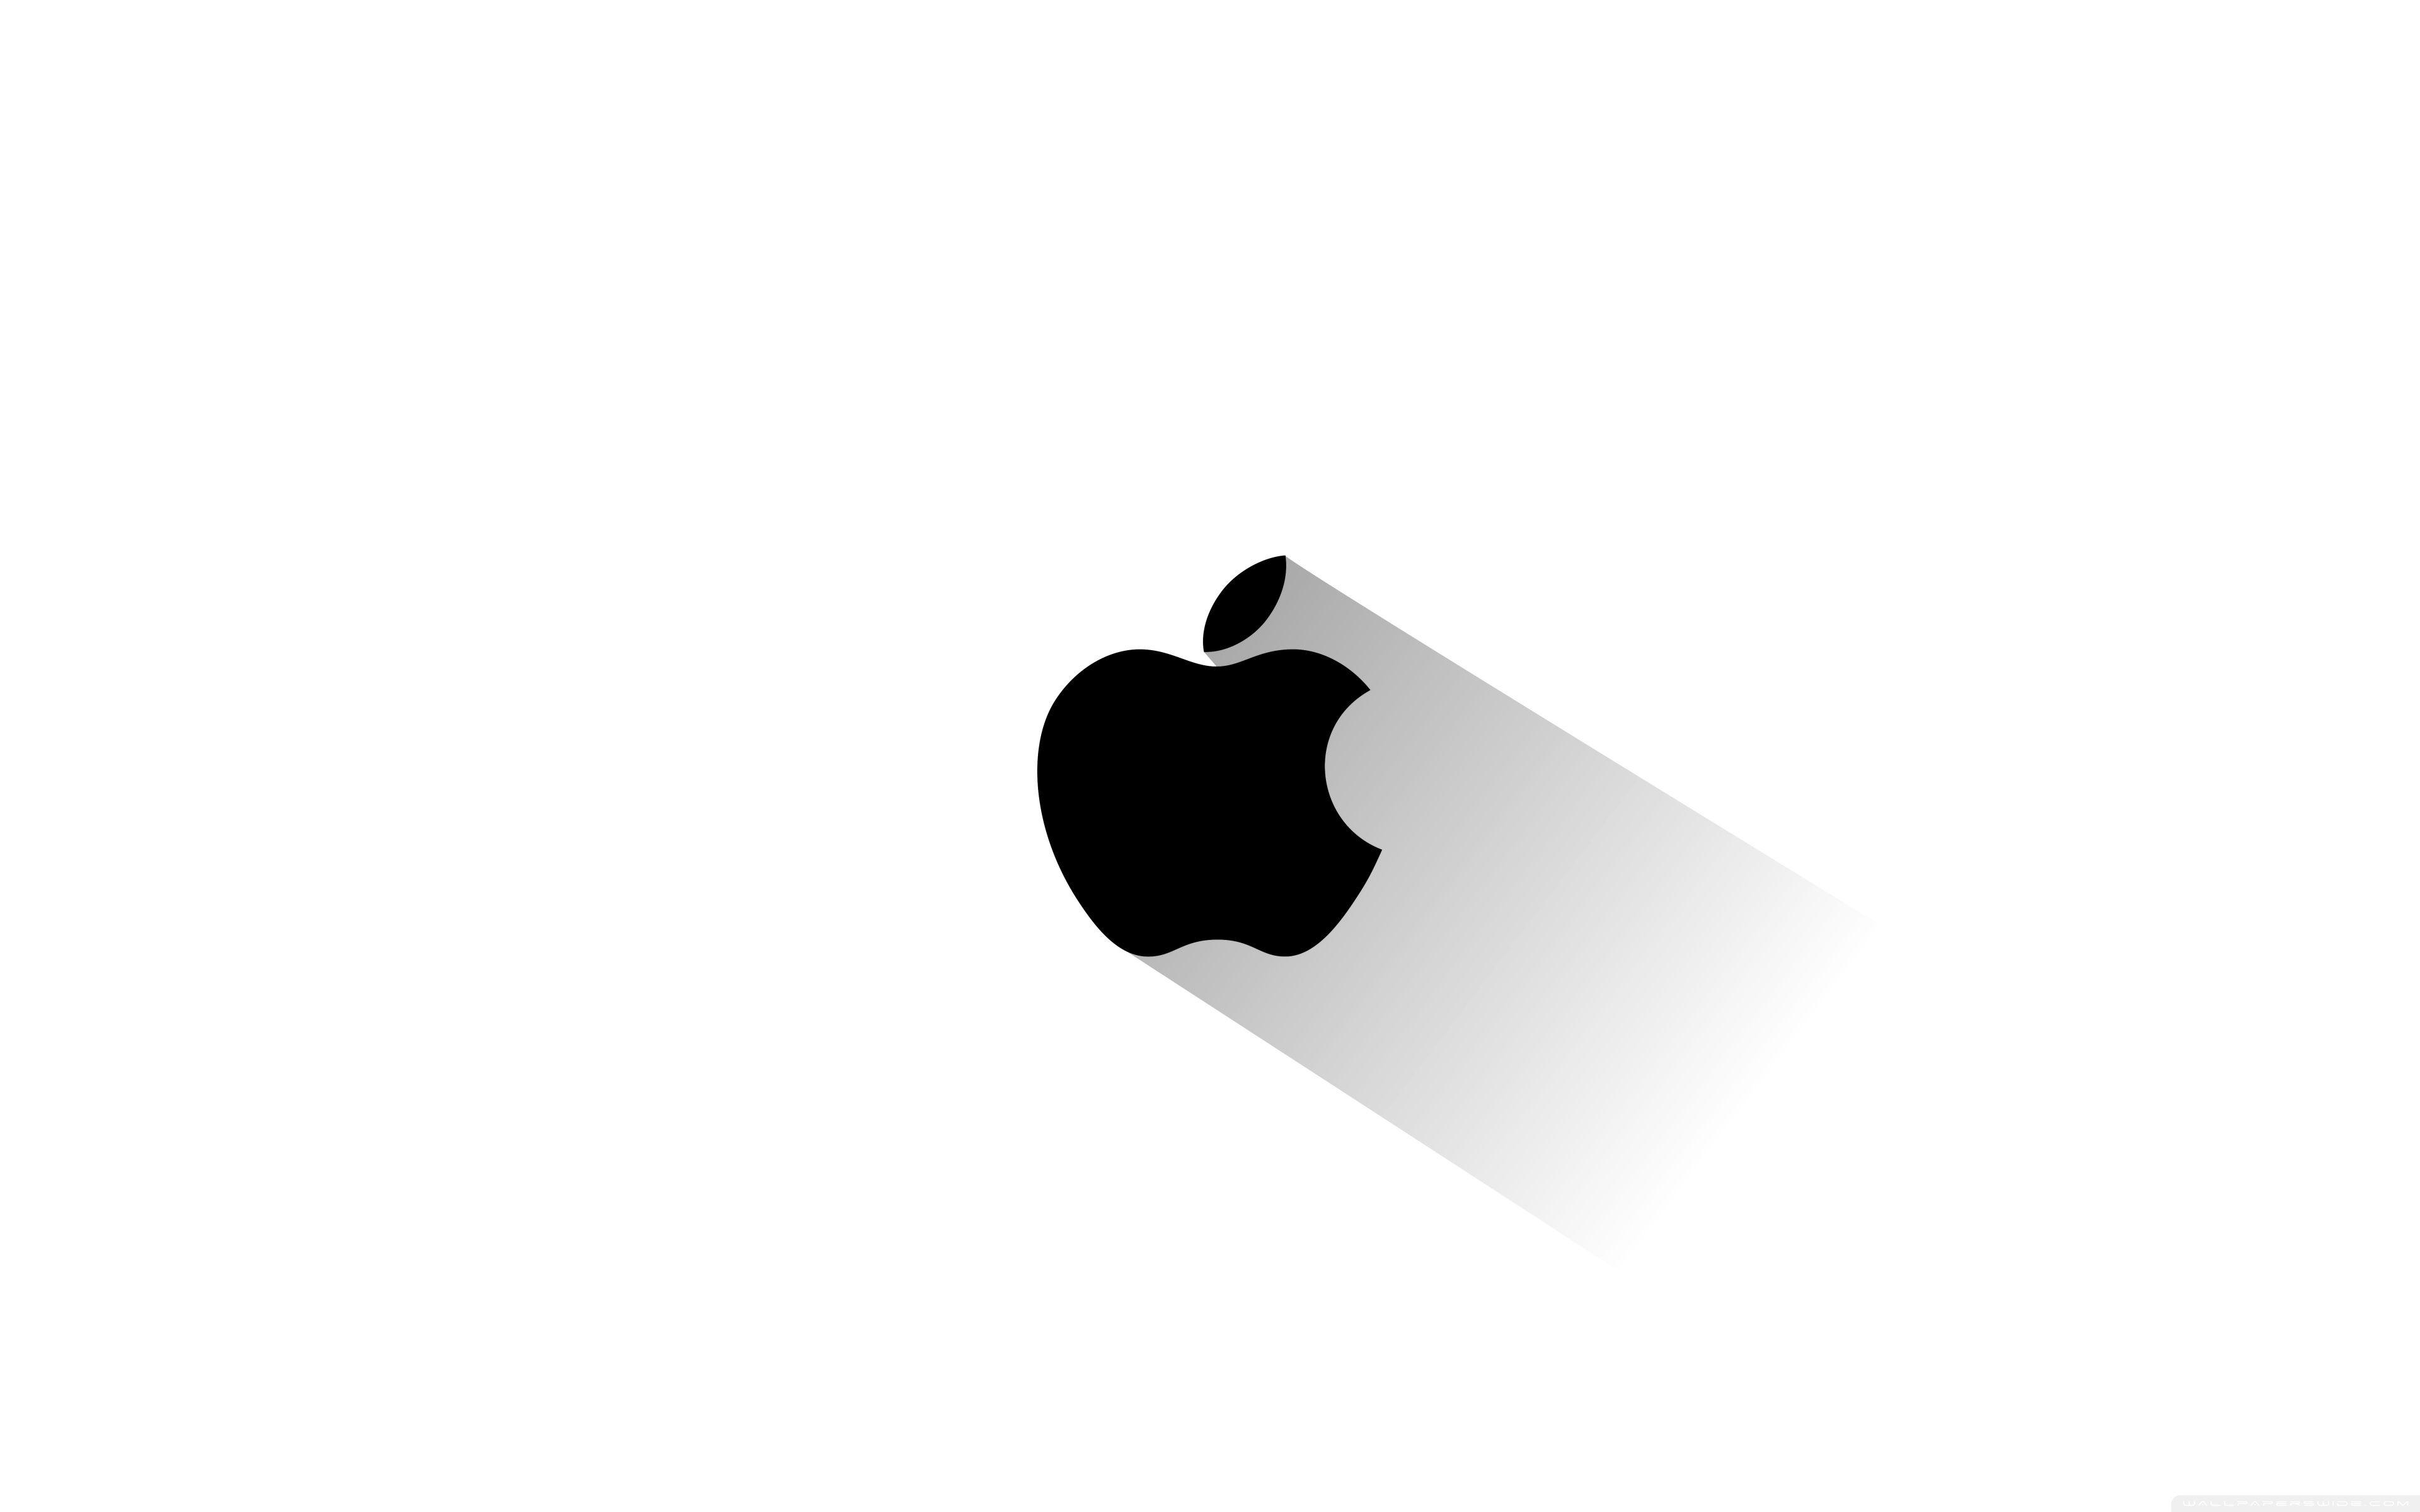 Wide Logo - Apple Logo ❤ 4K HD Desktop Wallpaper for • Wide & Ultra Widescreen ...